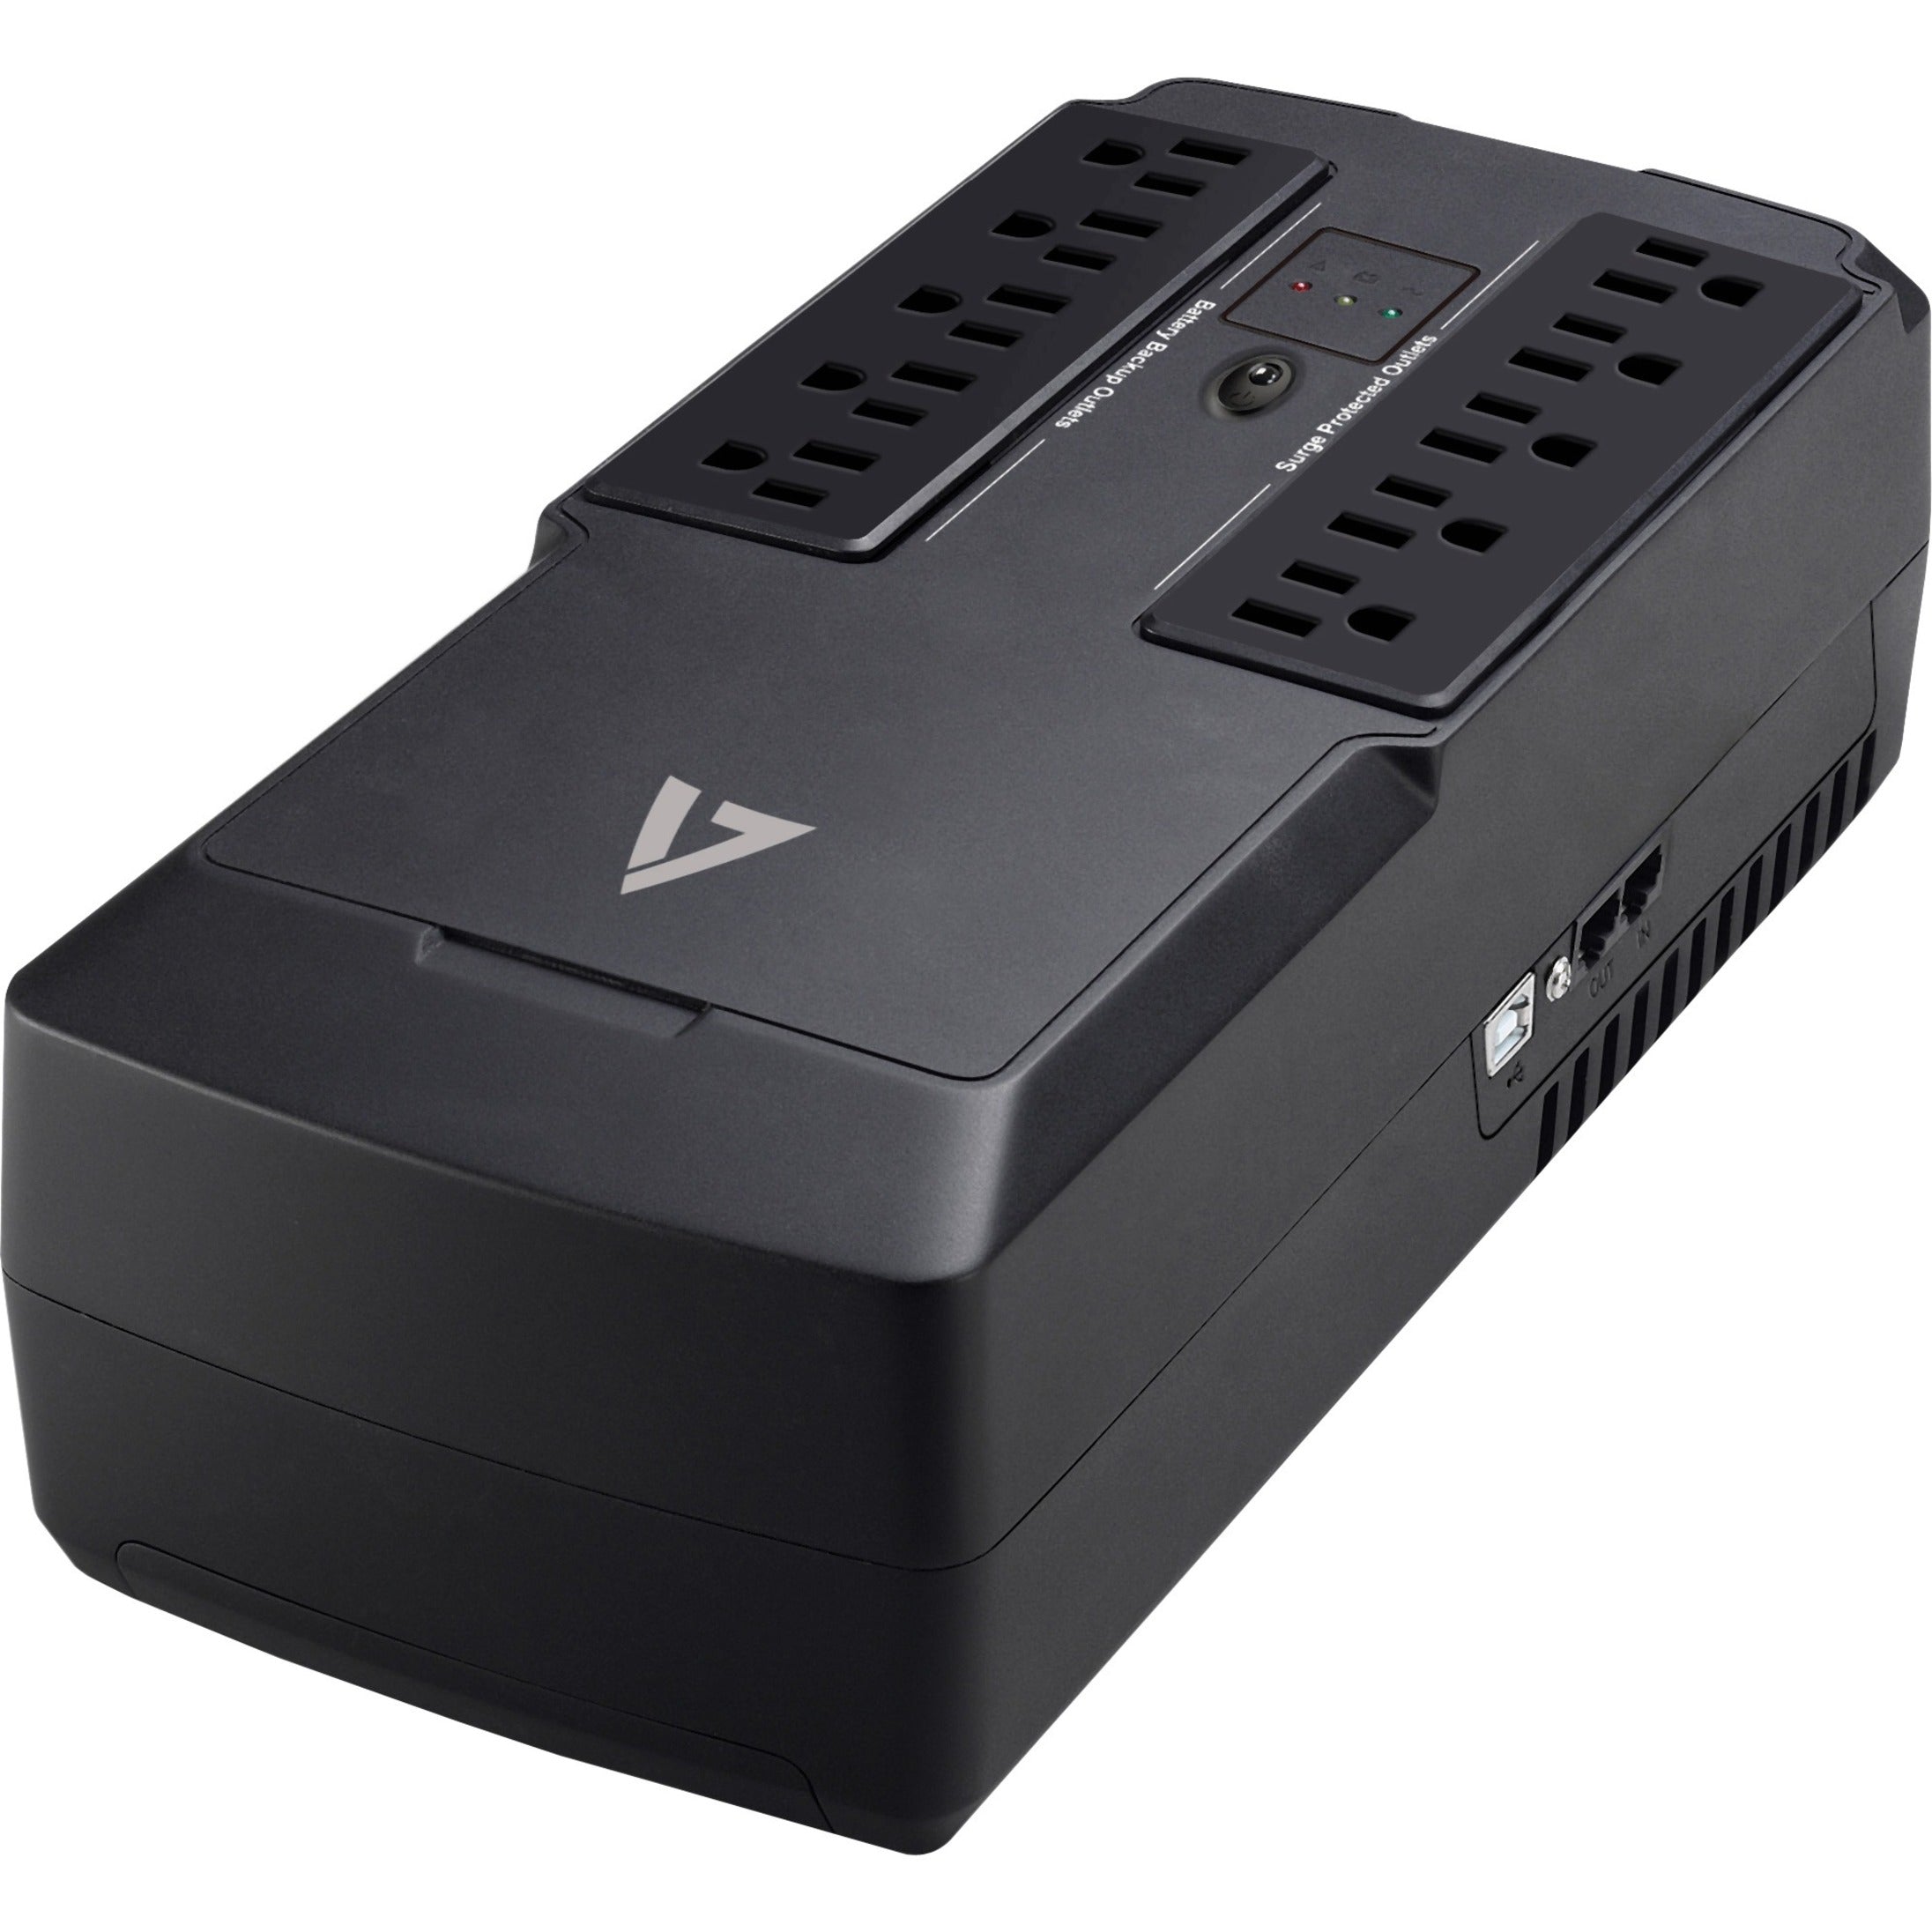 V7 UPS1DT550-1N UPS 550VA Desktop with 10 Outlets 3 Year Limited Warranty Energy Star USB 120V AC